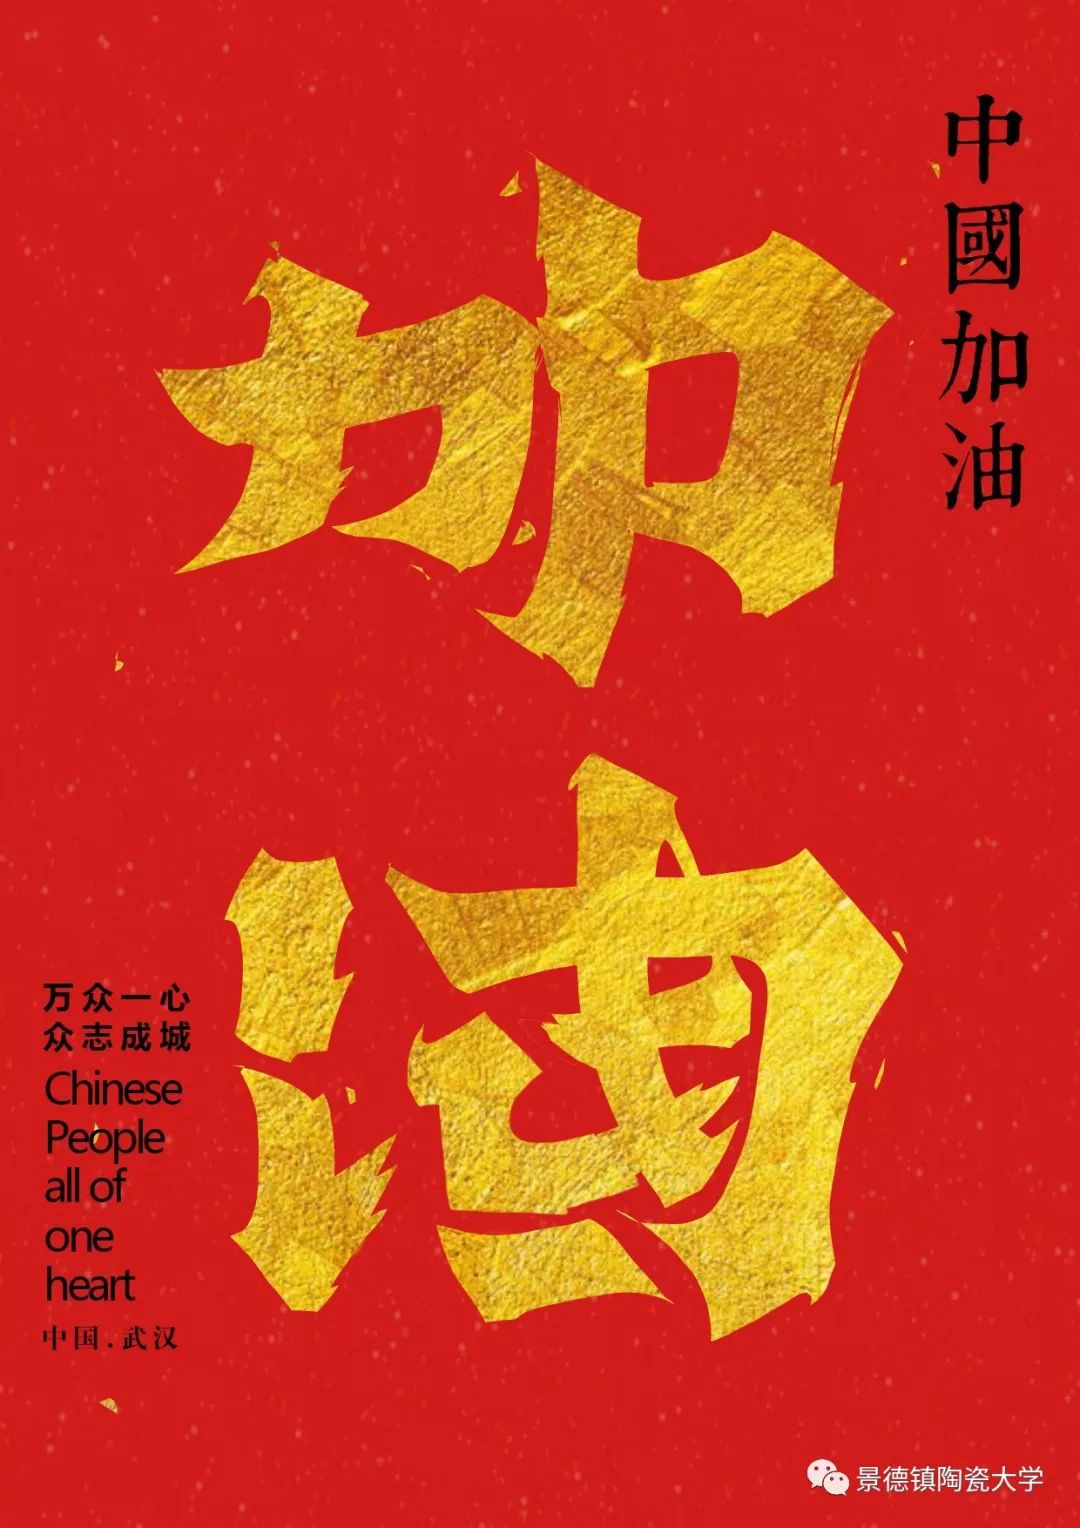 《加油中国》李营伟设计说明:汉字设计中包含加油和中国两个词语